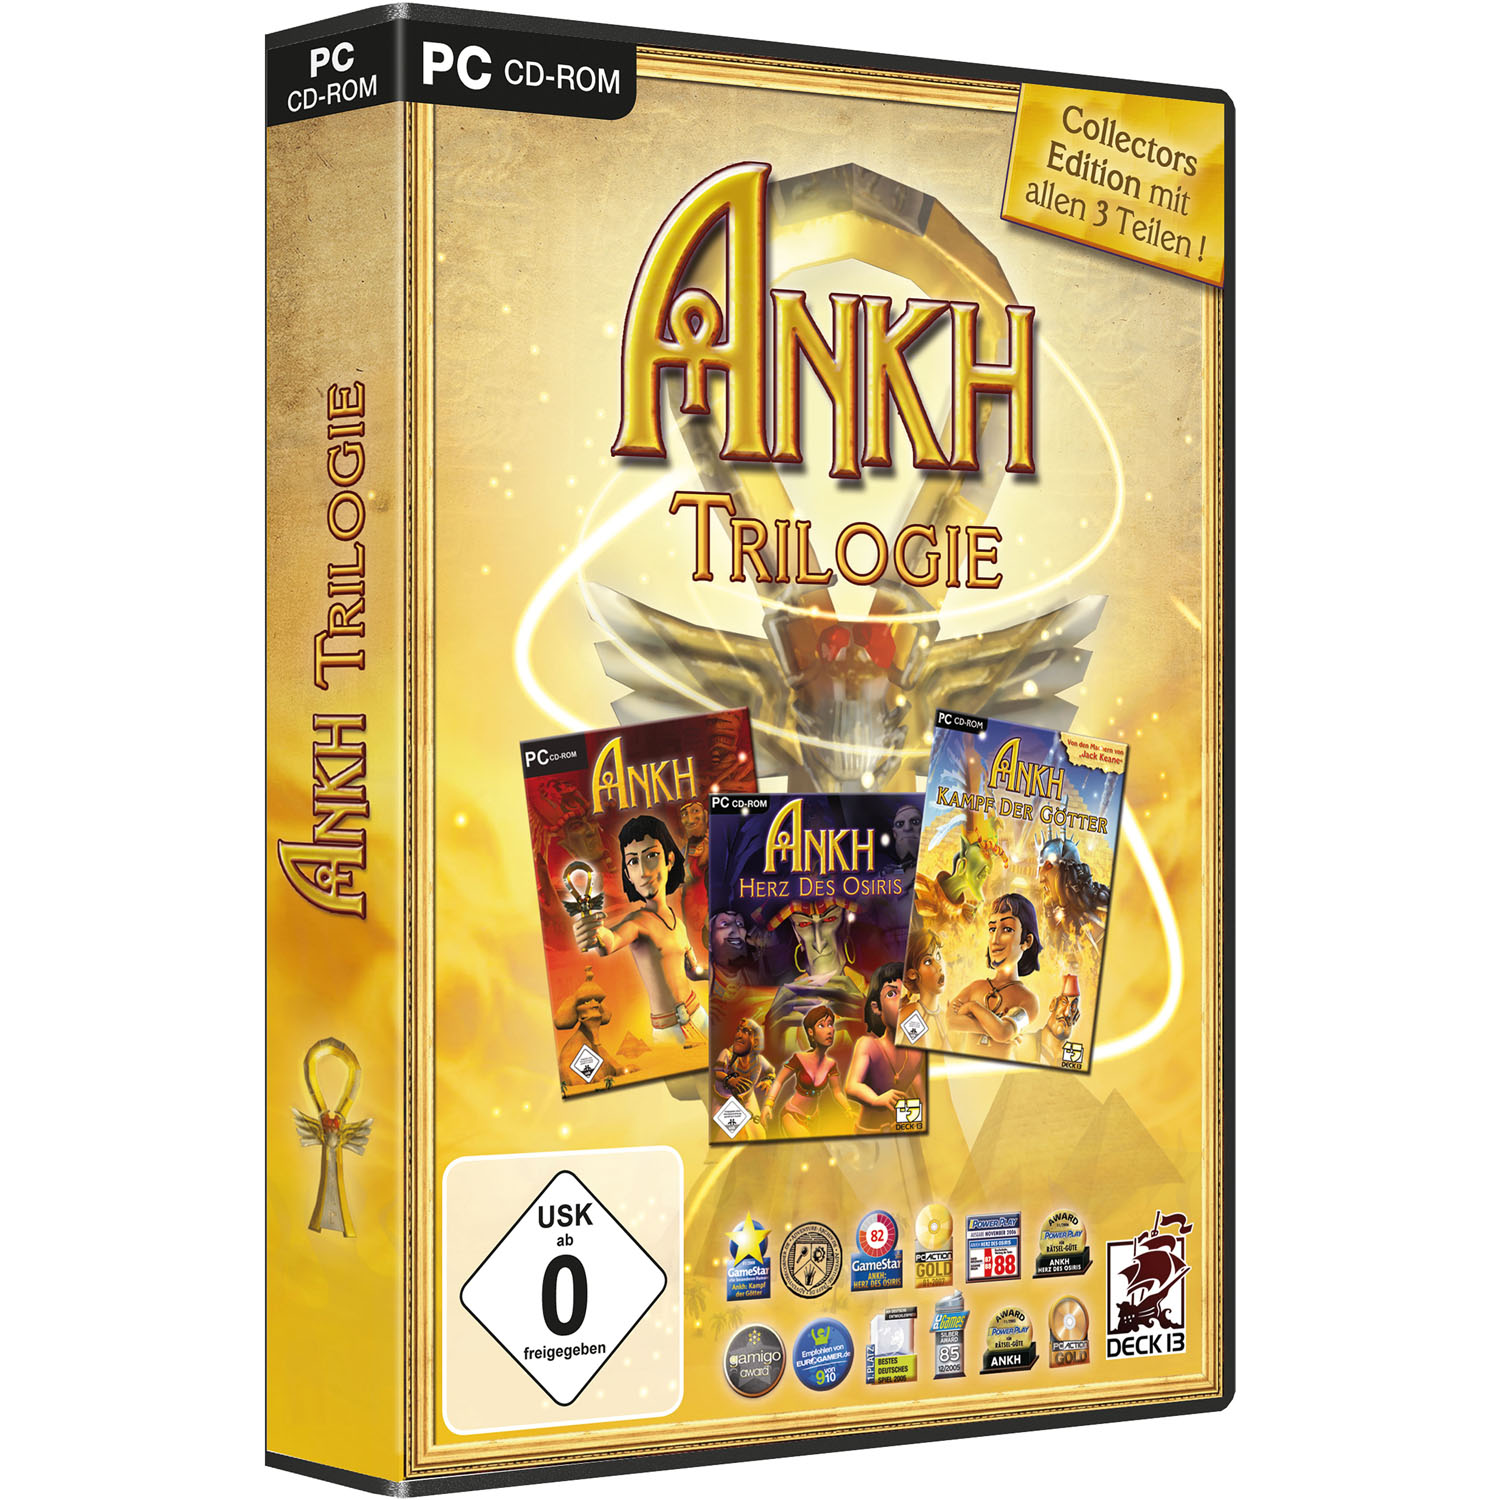 Edition - Collectors [PC] Trilogie ANKH -